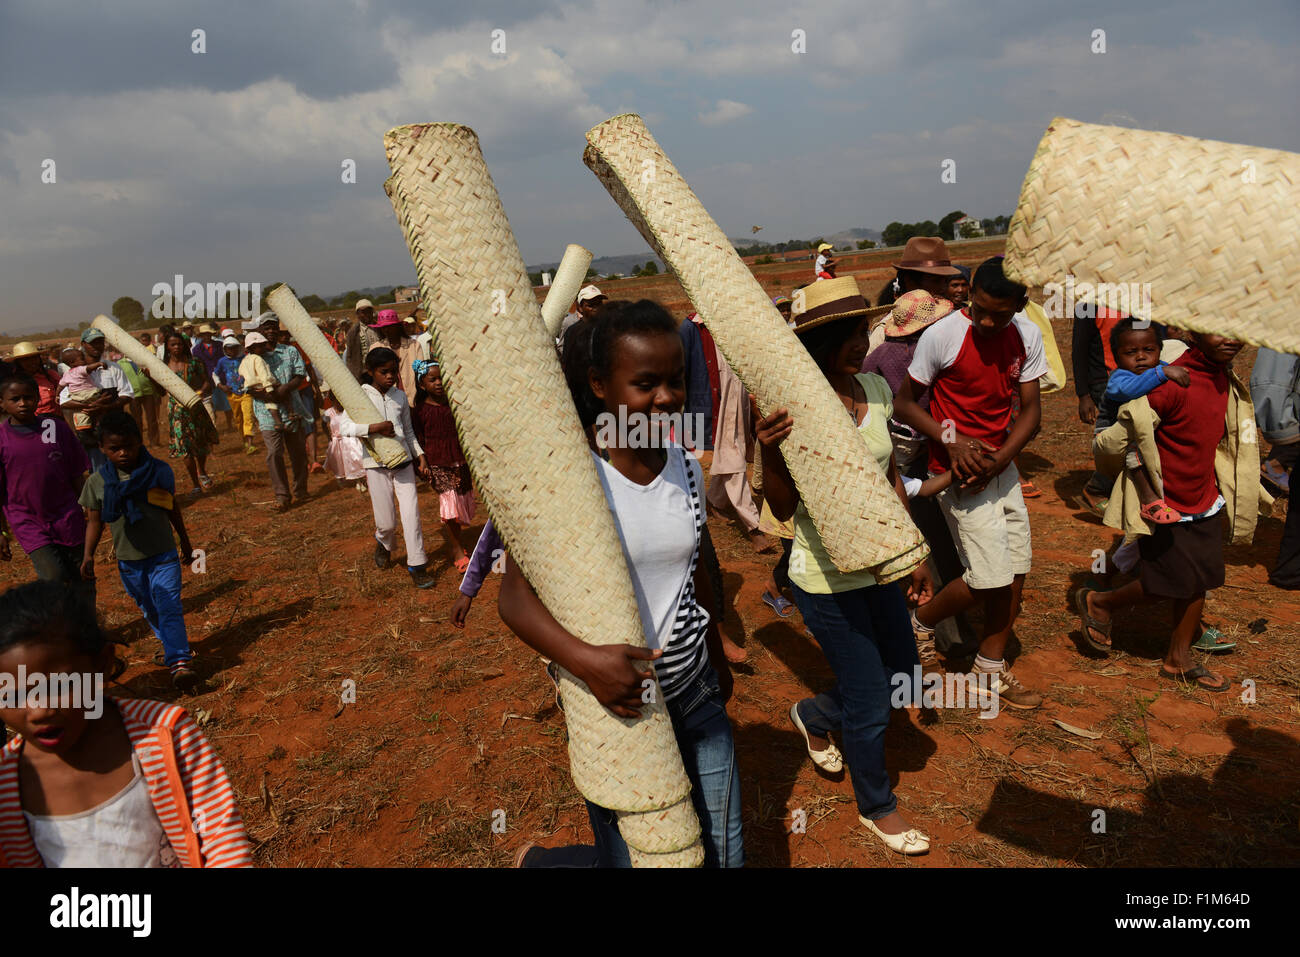 Una processione alla tomba. Il popolo malgascio tappetini di contenimento che coprirà i cadaveri quando vengono portati fuori. Foto Stock